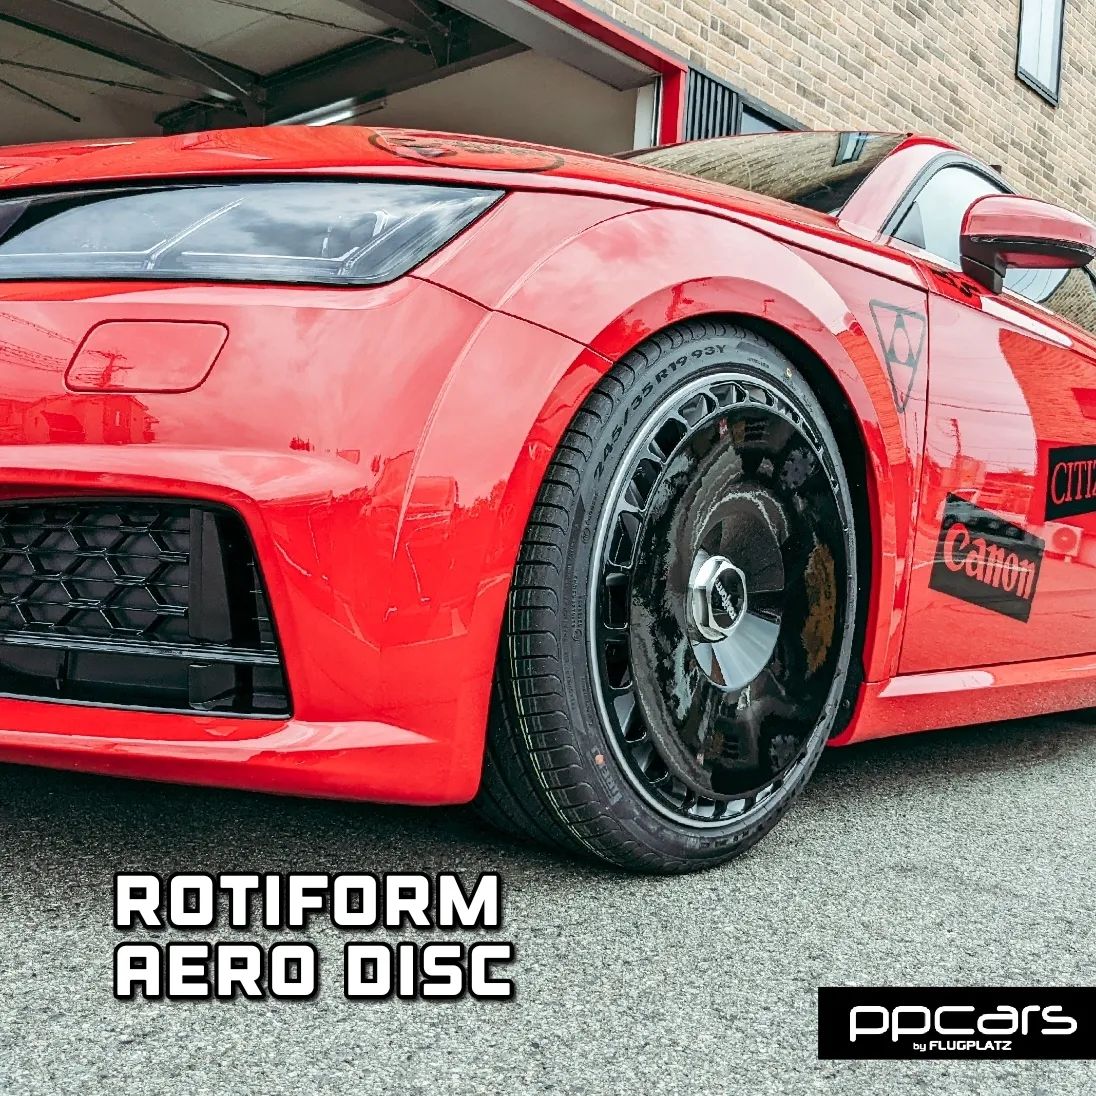 Audi TT (8S) x rotiform RSE & Aerodisc